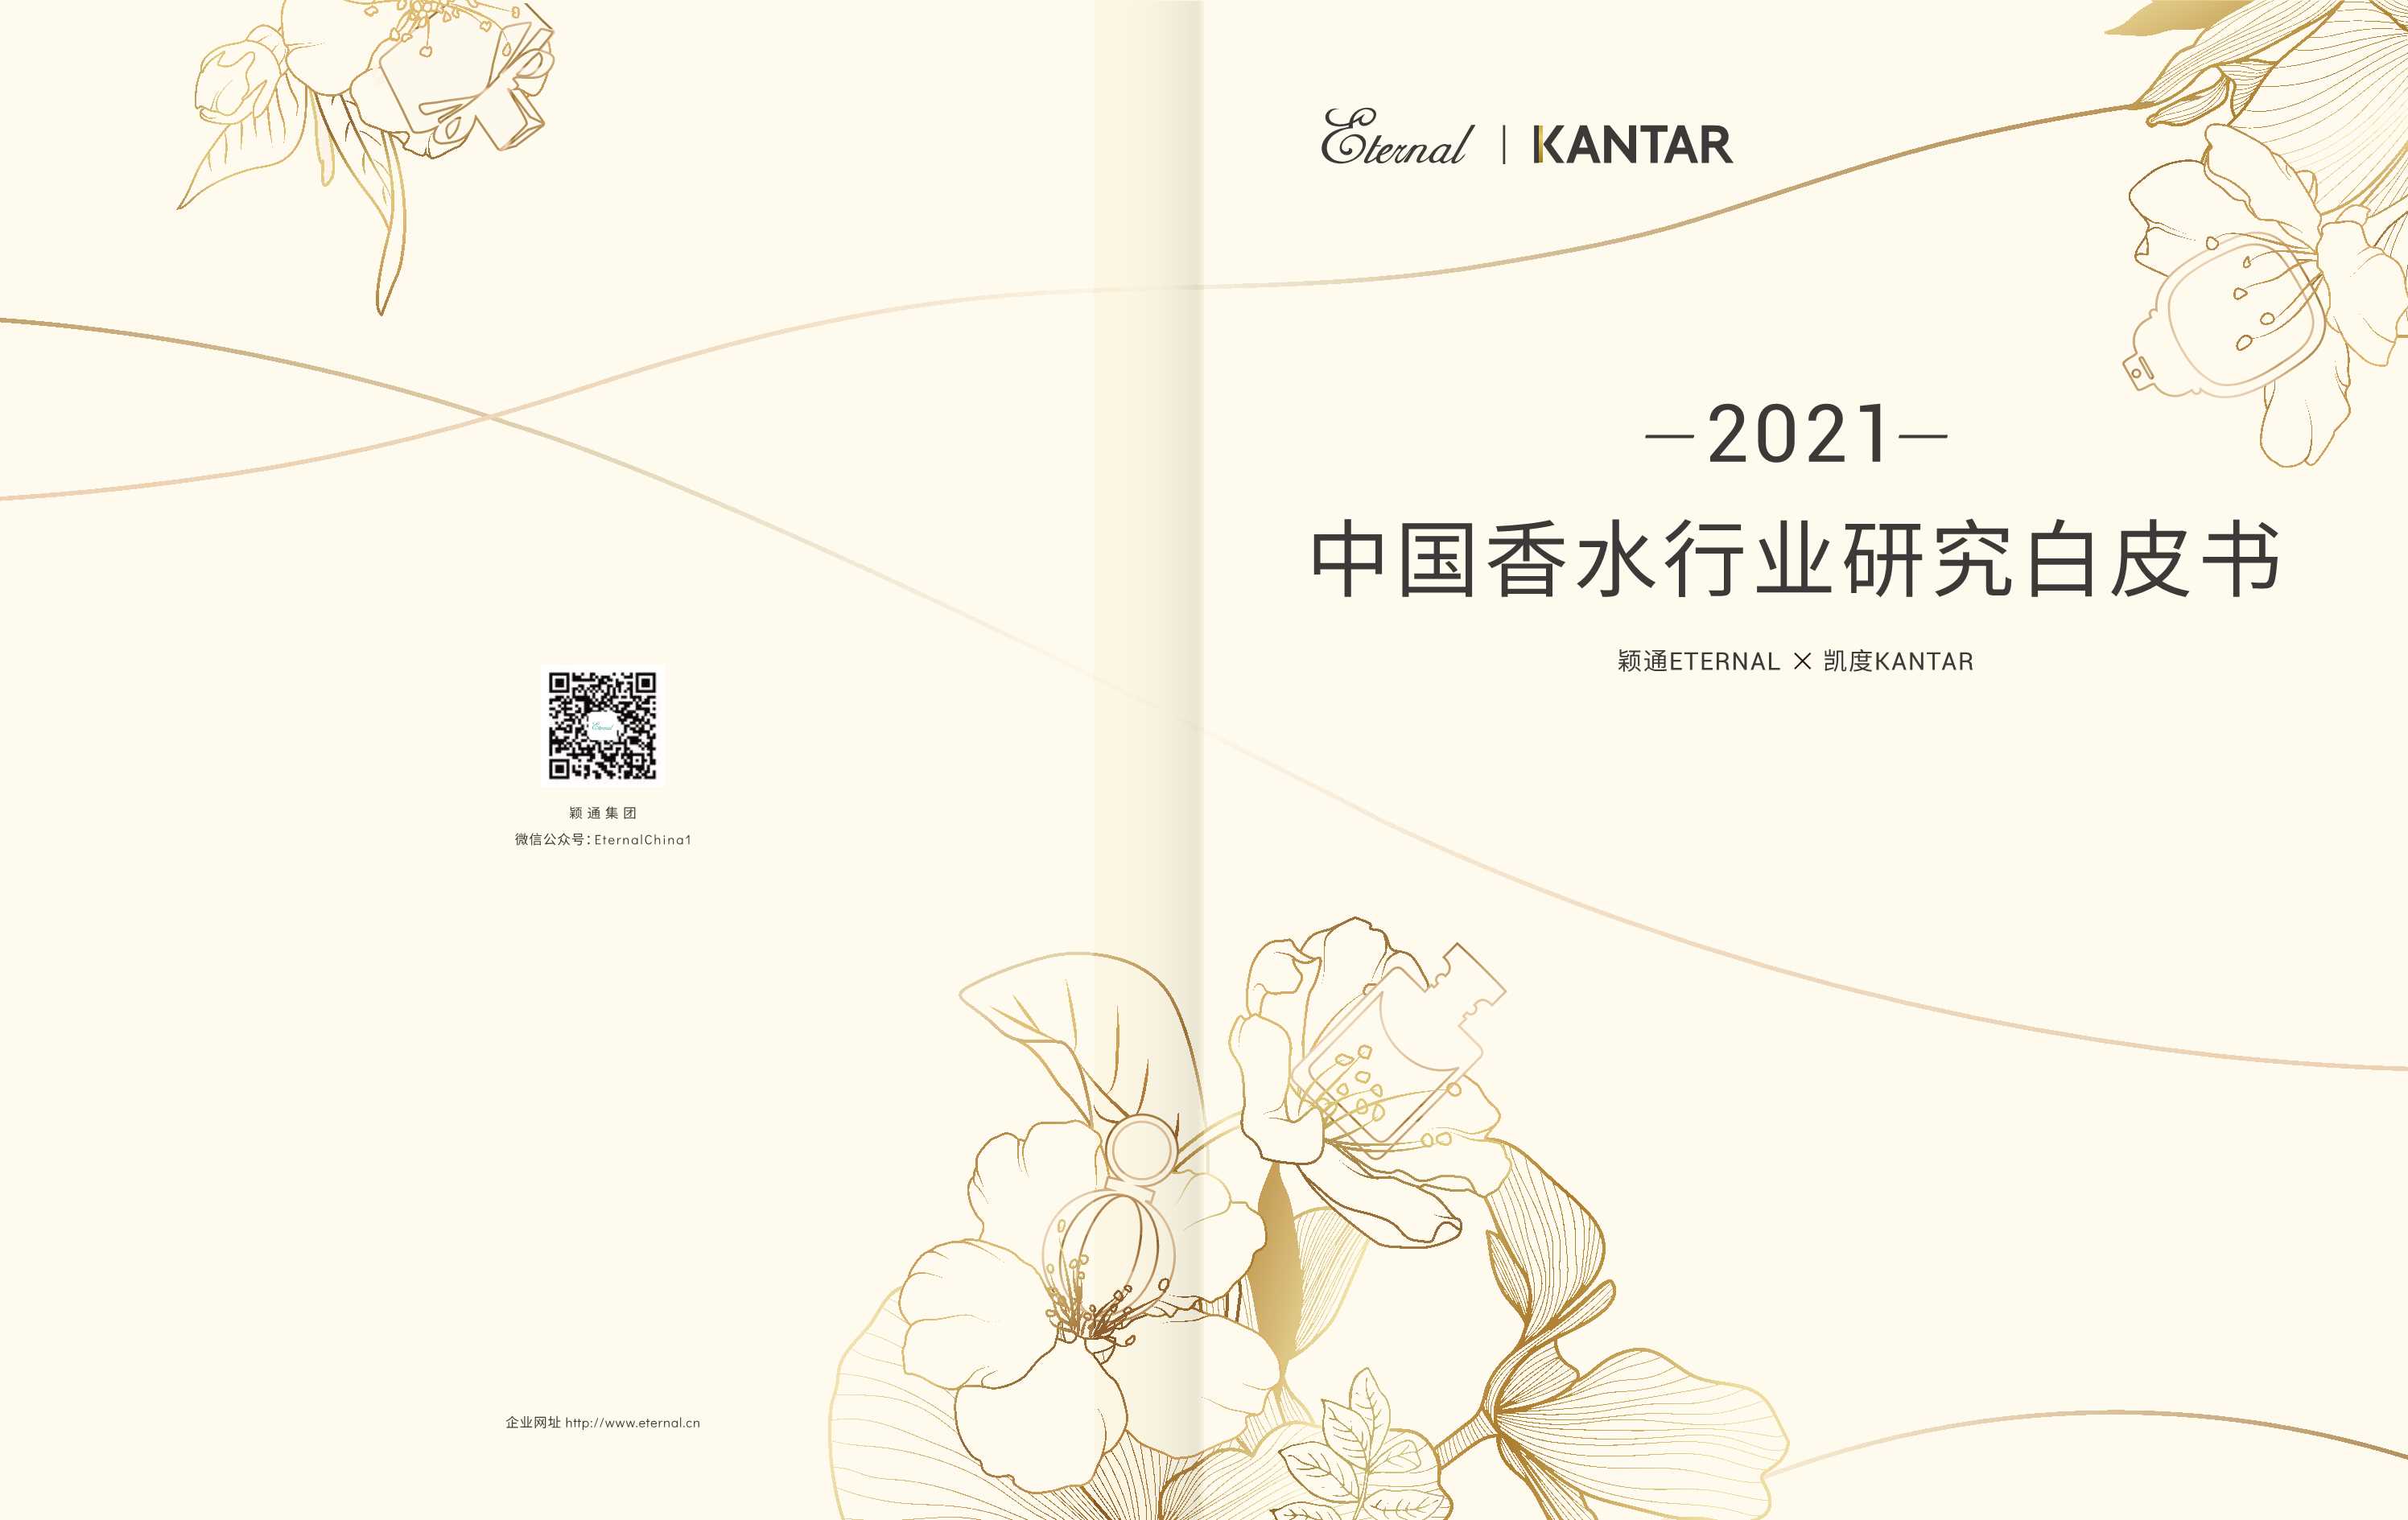 凯度&颖通-2021中国香水行业研究白皮书-2021.11-27页